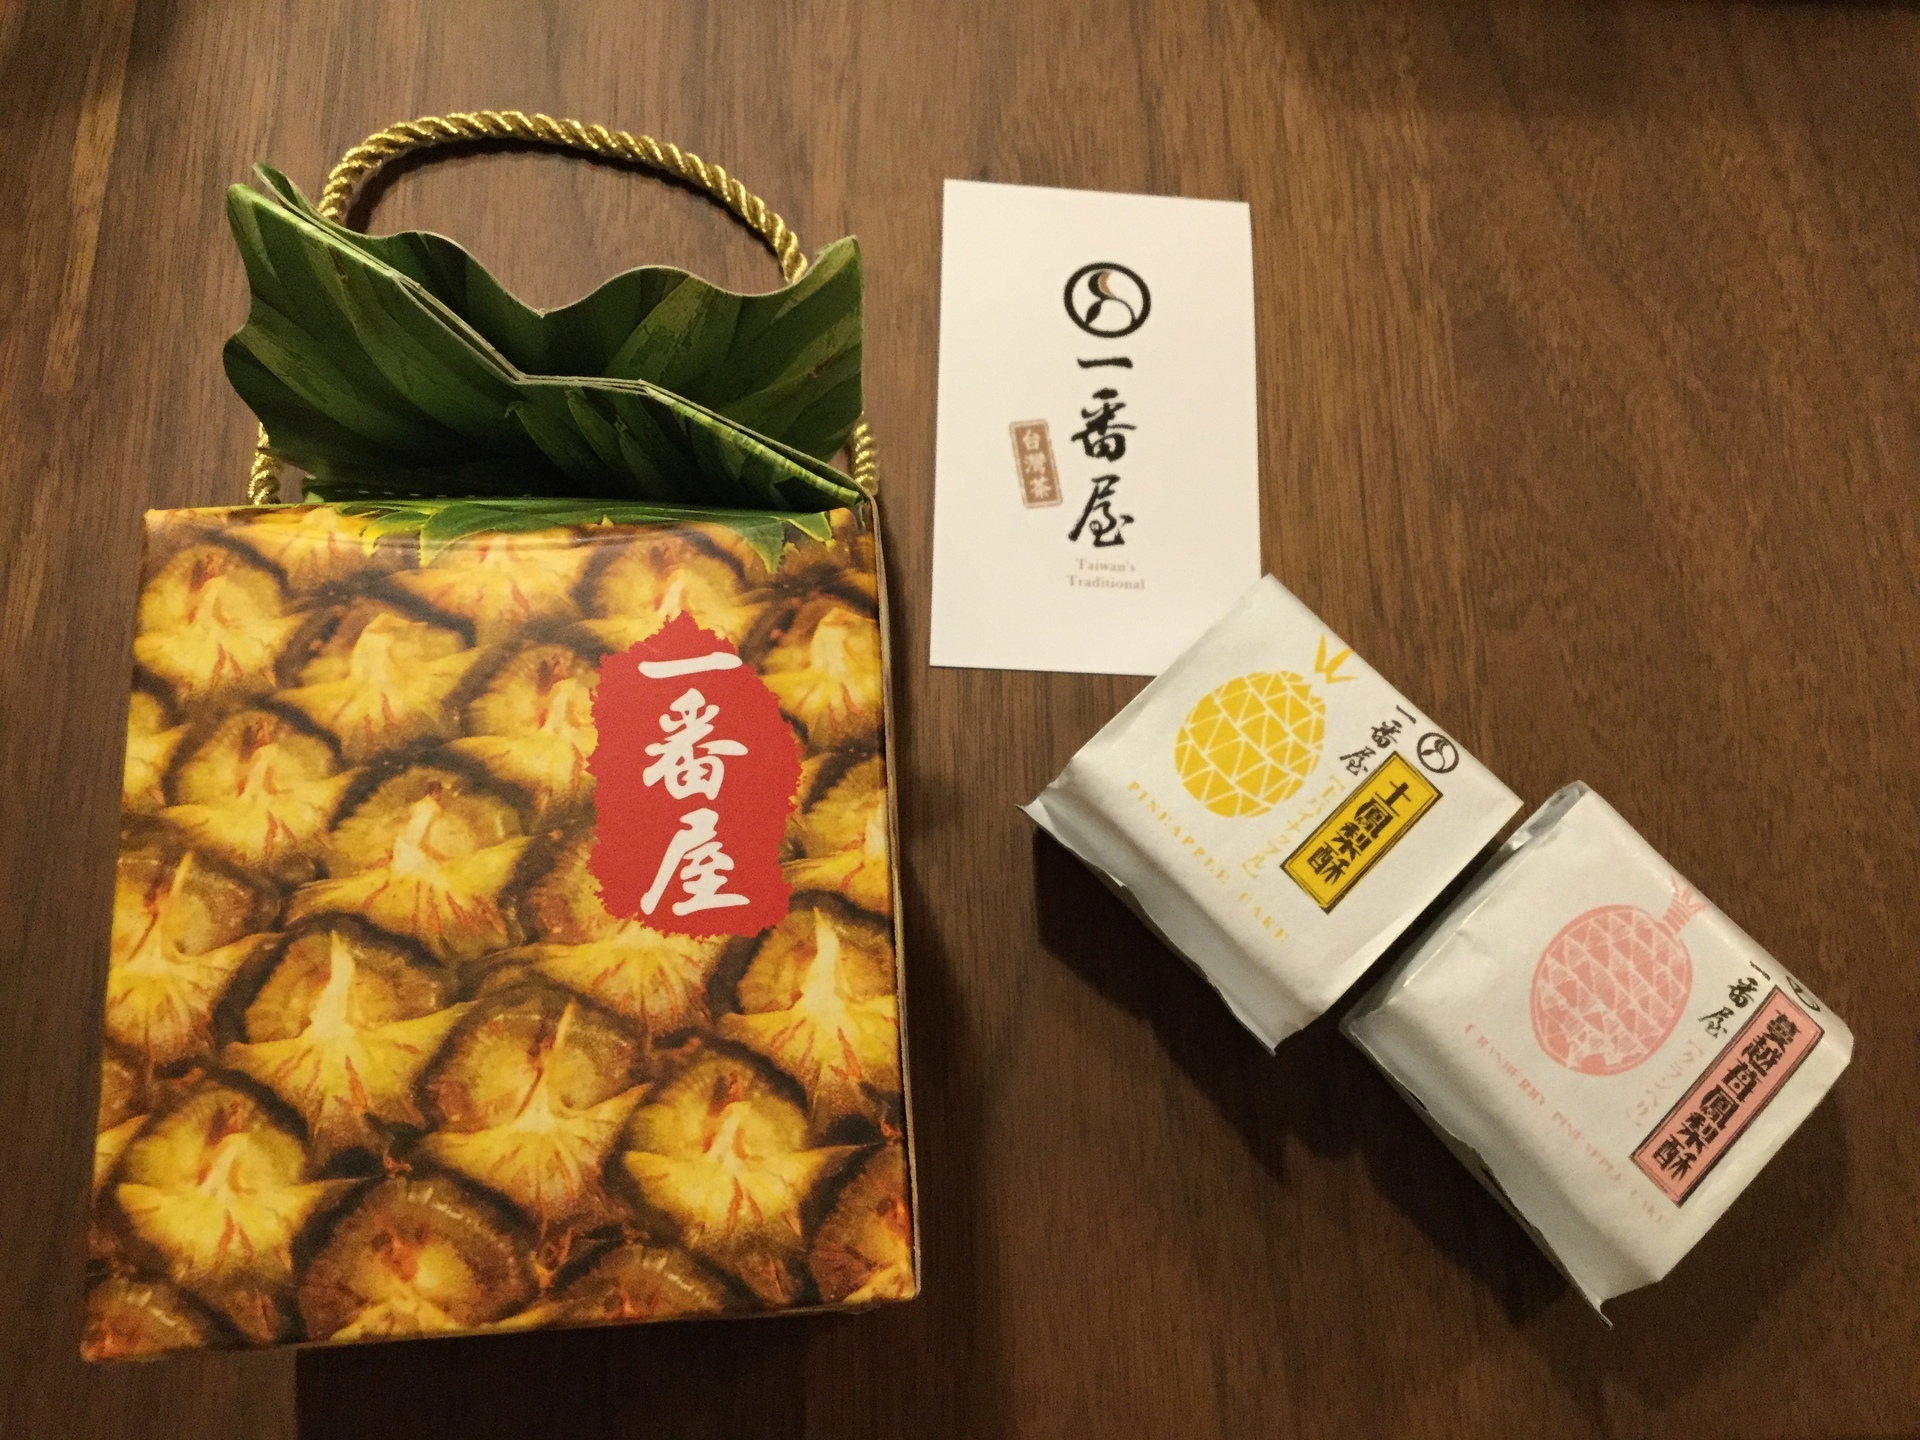 台湾土産の定番 パイナップルケーキ食べ比べ 17年版 クレジットカードを活用しお得に旅するミセスのちょっとイイ話